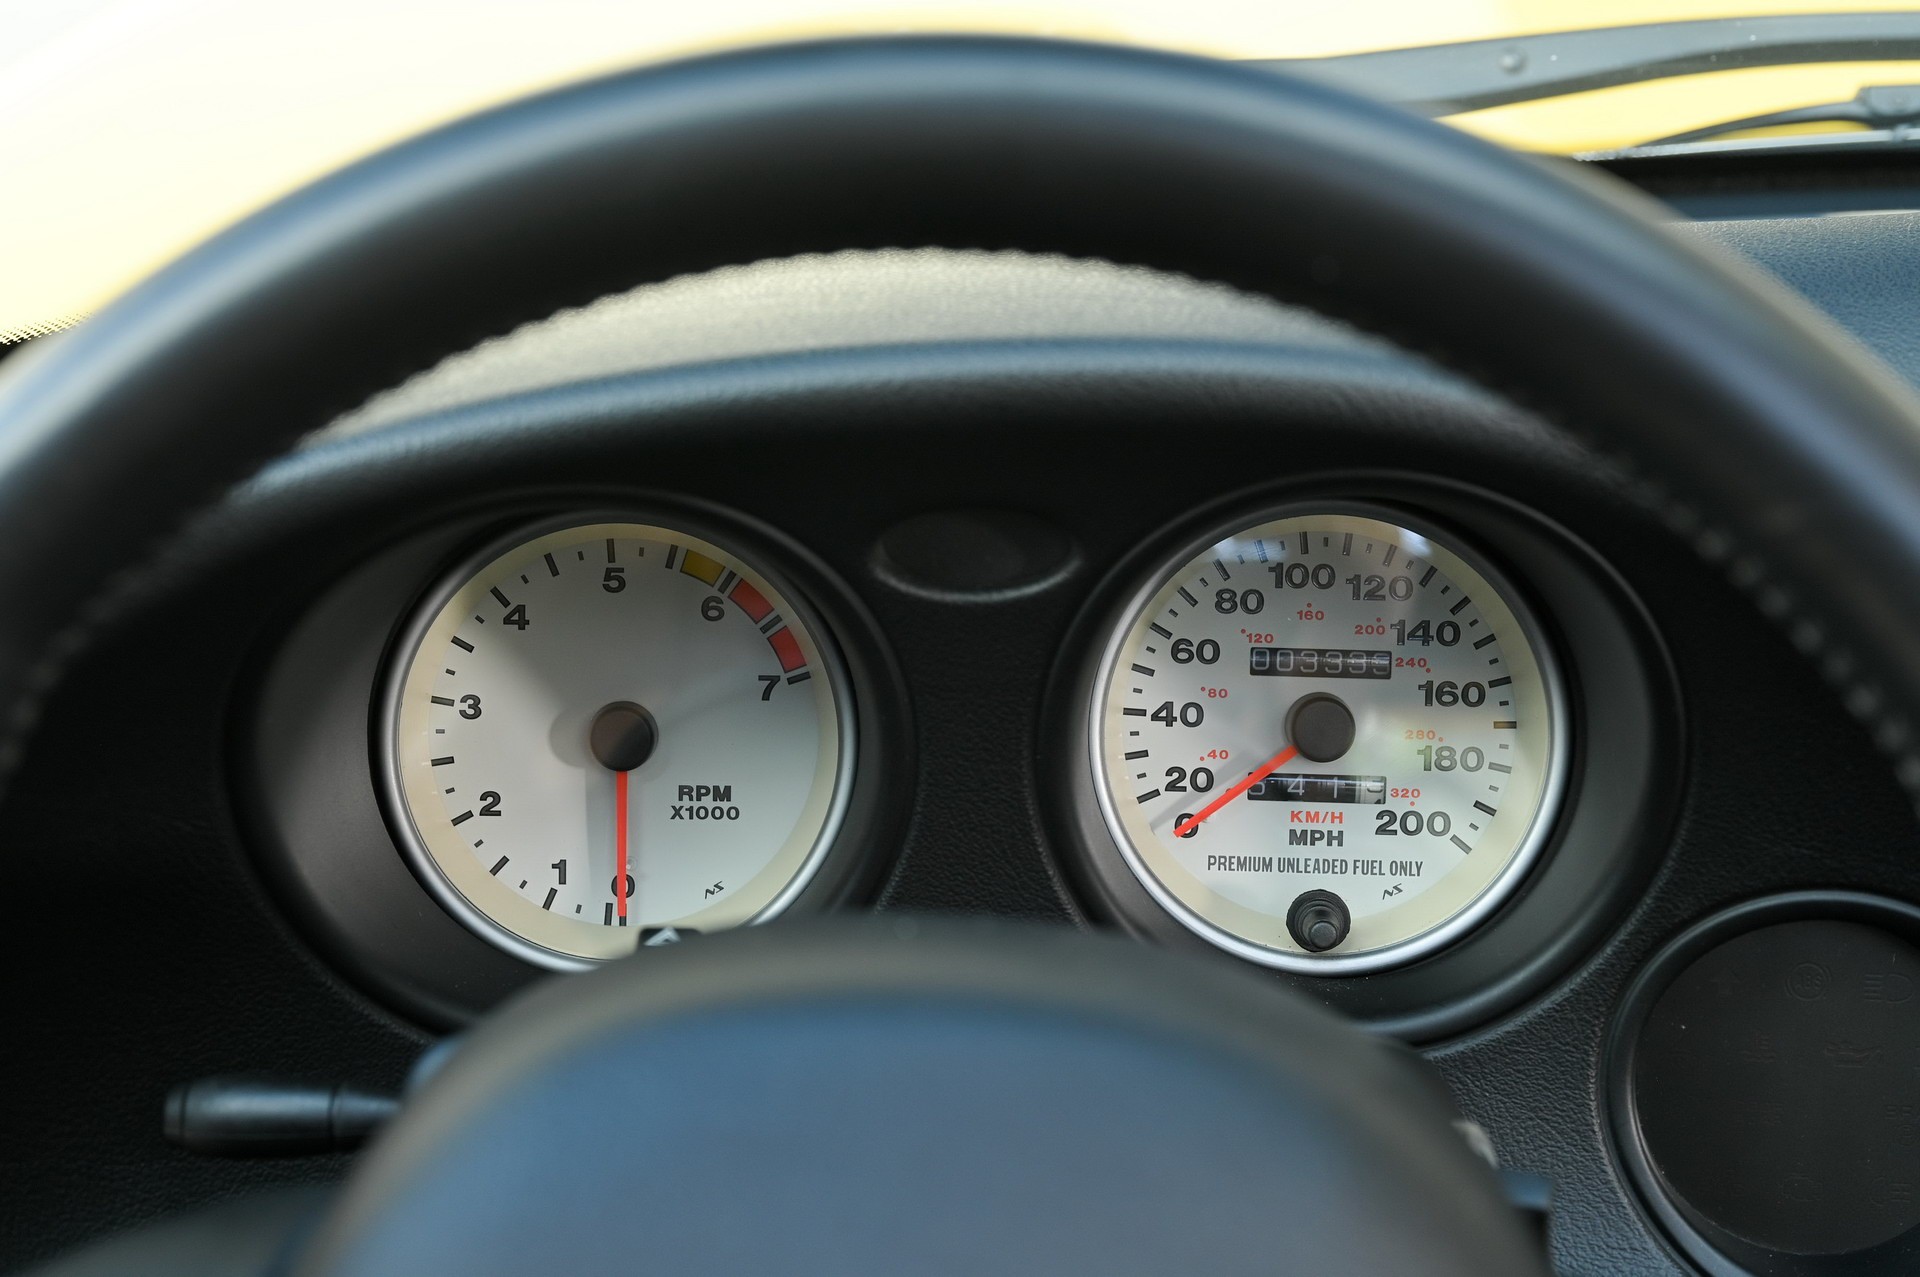 Яркий Dodge Viper RT/10 2002 года выпуска с минимальным пробегом